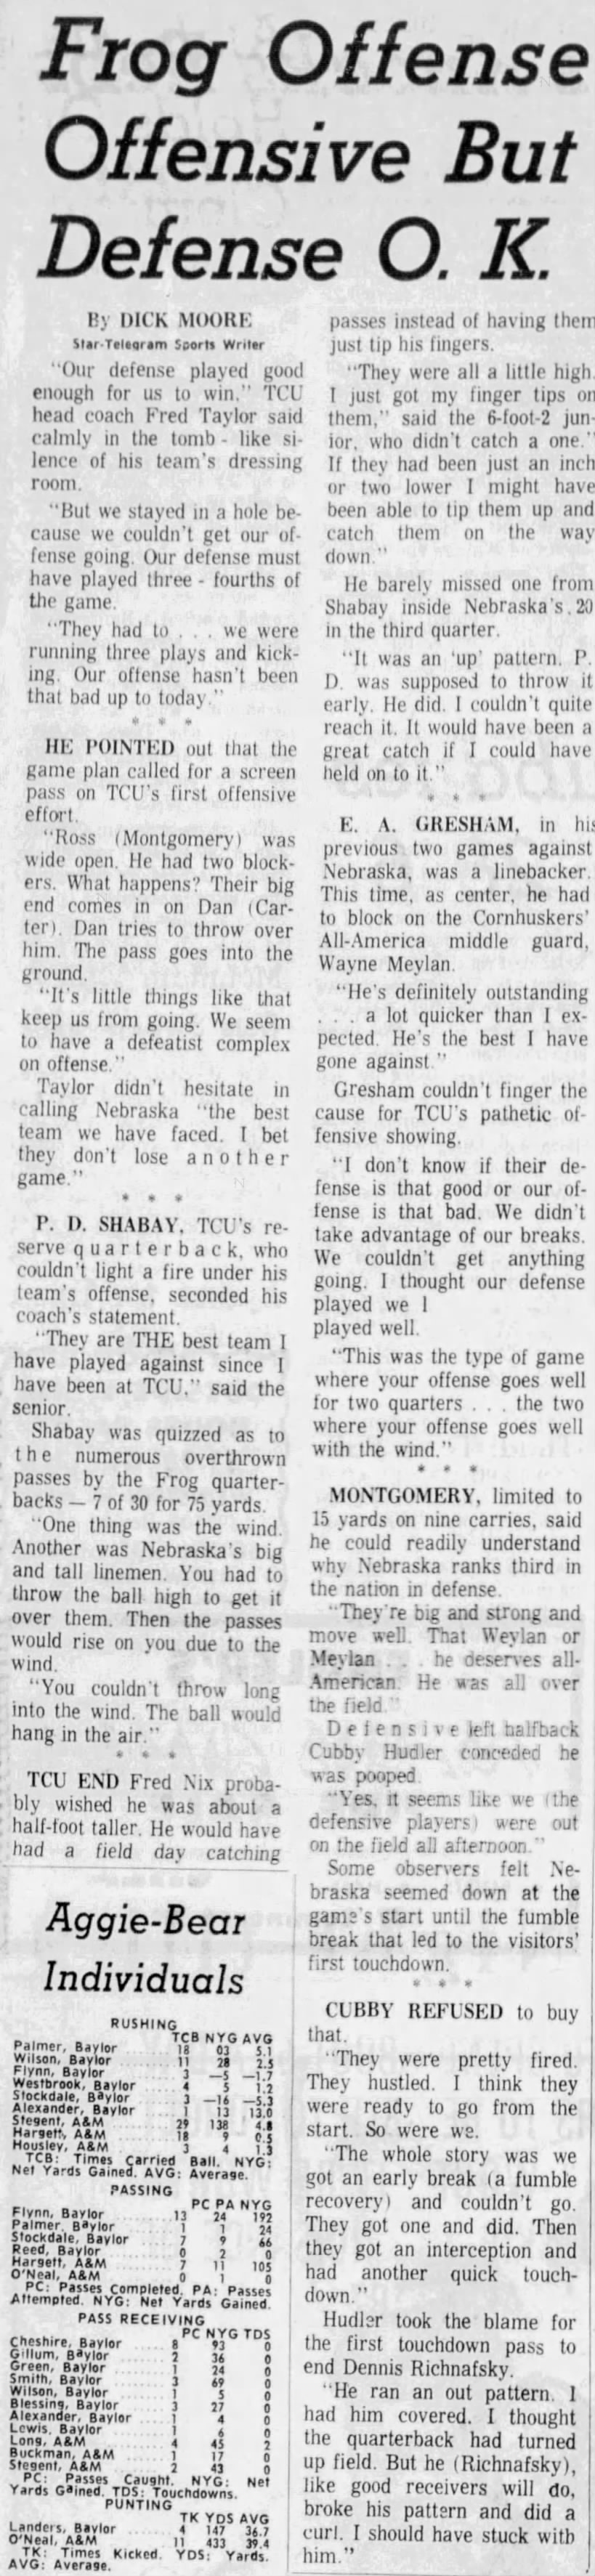 1967 Nebraska-TCU football, FW3